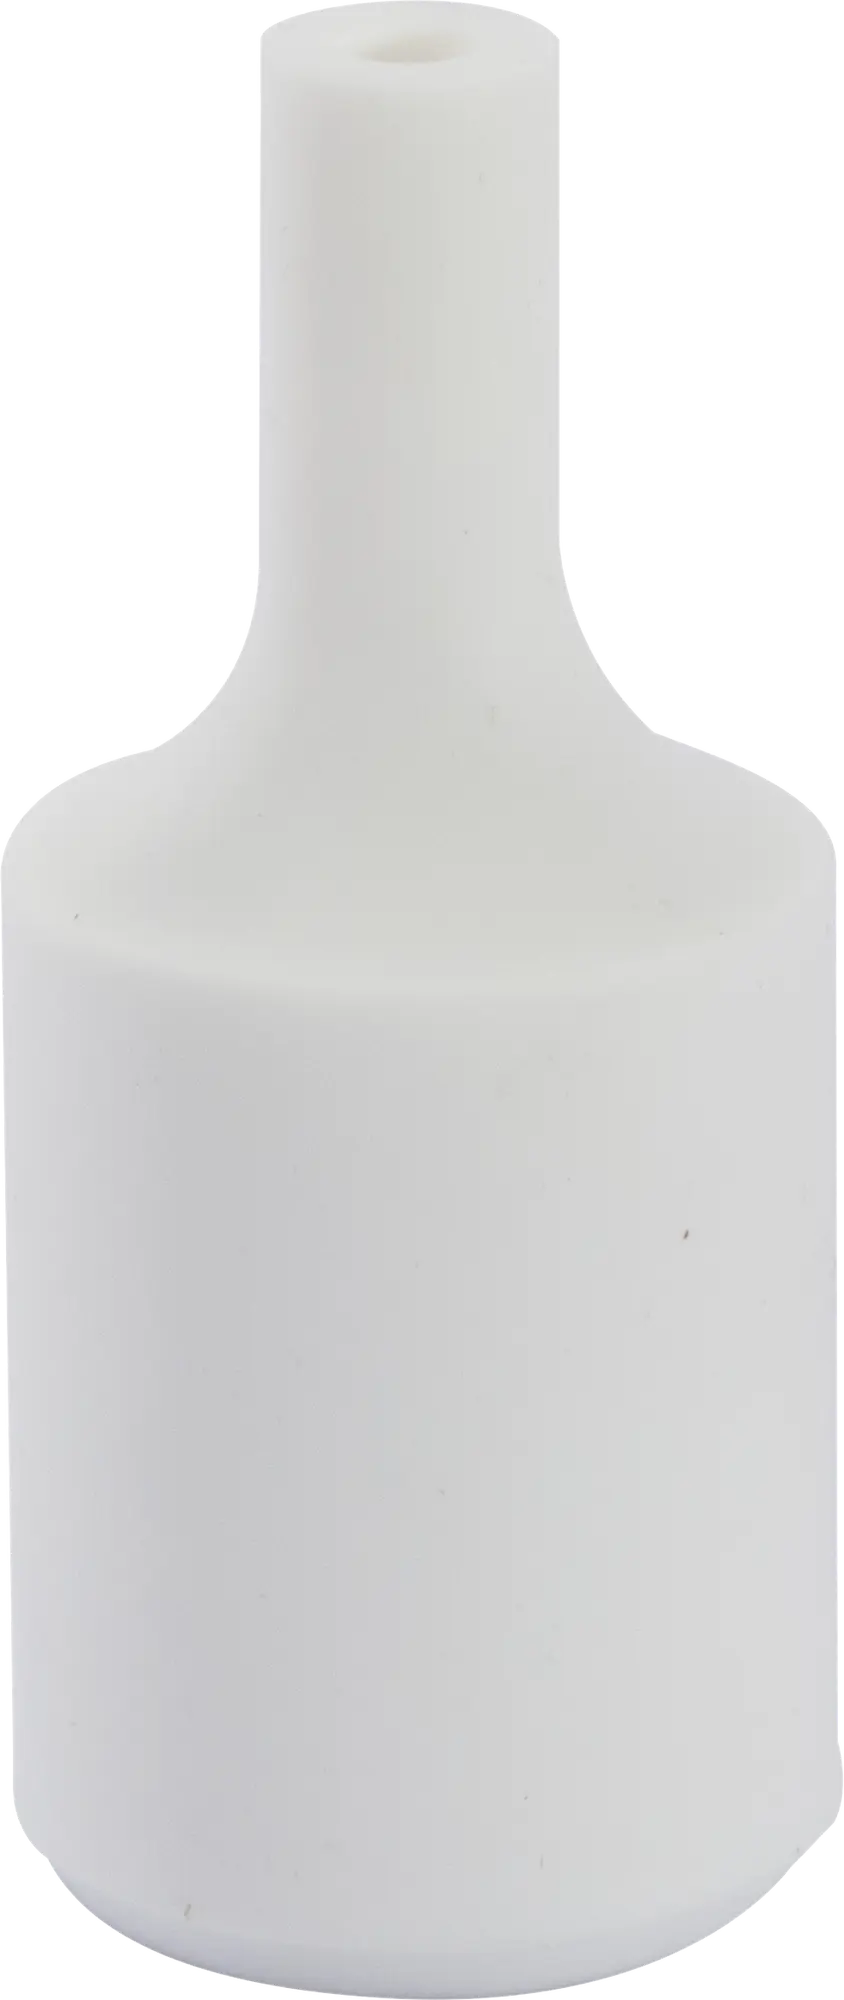 Casquillo e-27 chacon de silicona blanco